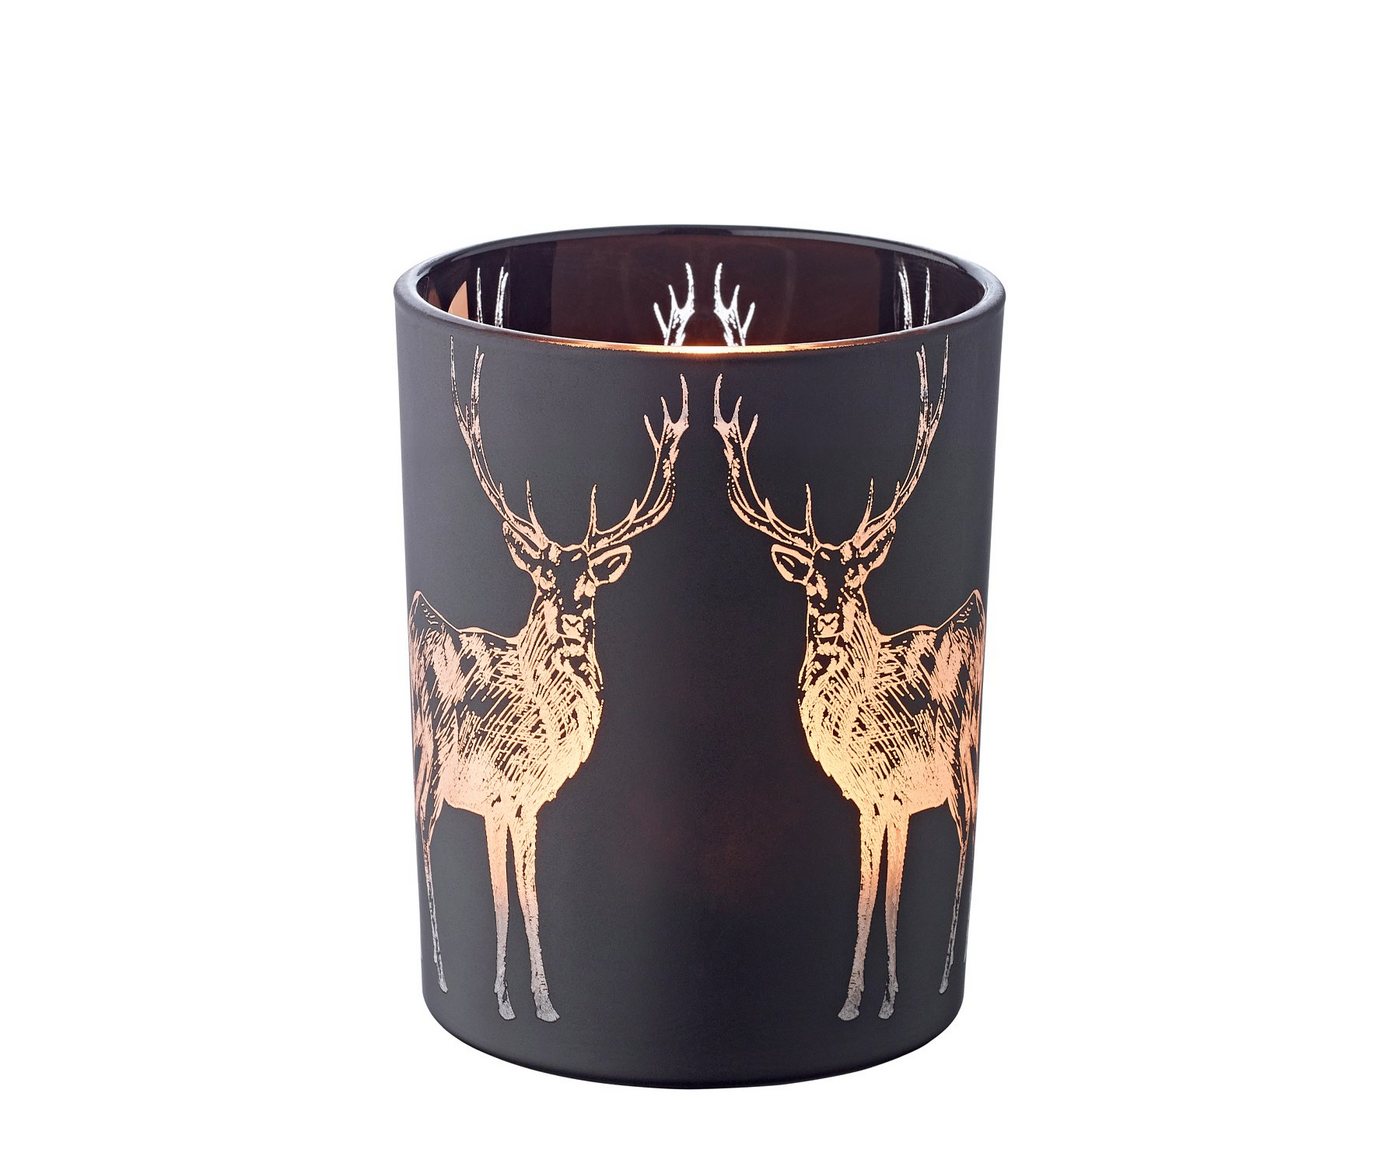 EDZARD Windlicht Tiu, Höhe 13 cm, Ø 10 cm, Kerzenglas mit Hirsch-Motiv in Gold-Optik, Teelichtglas im zeitlosen Design von EDZARD